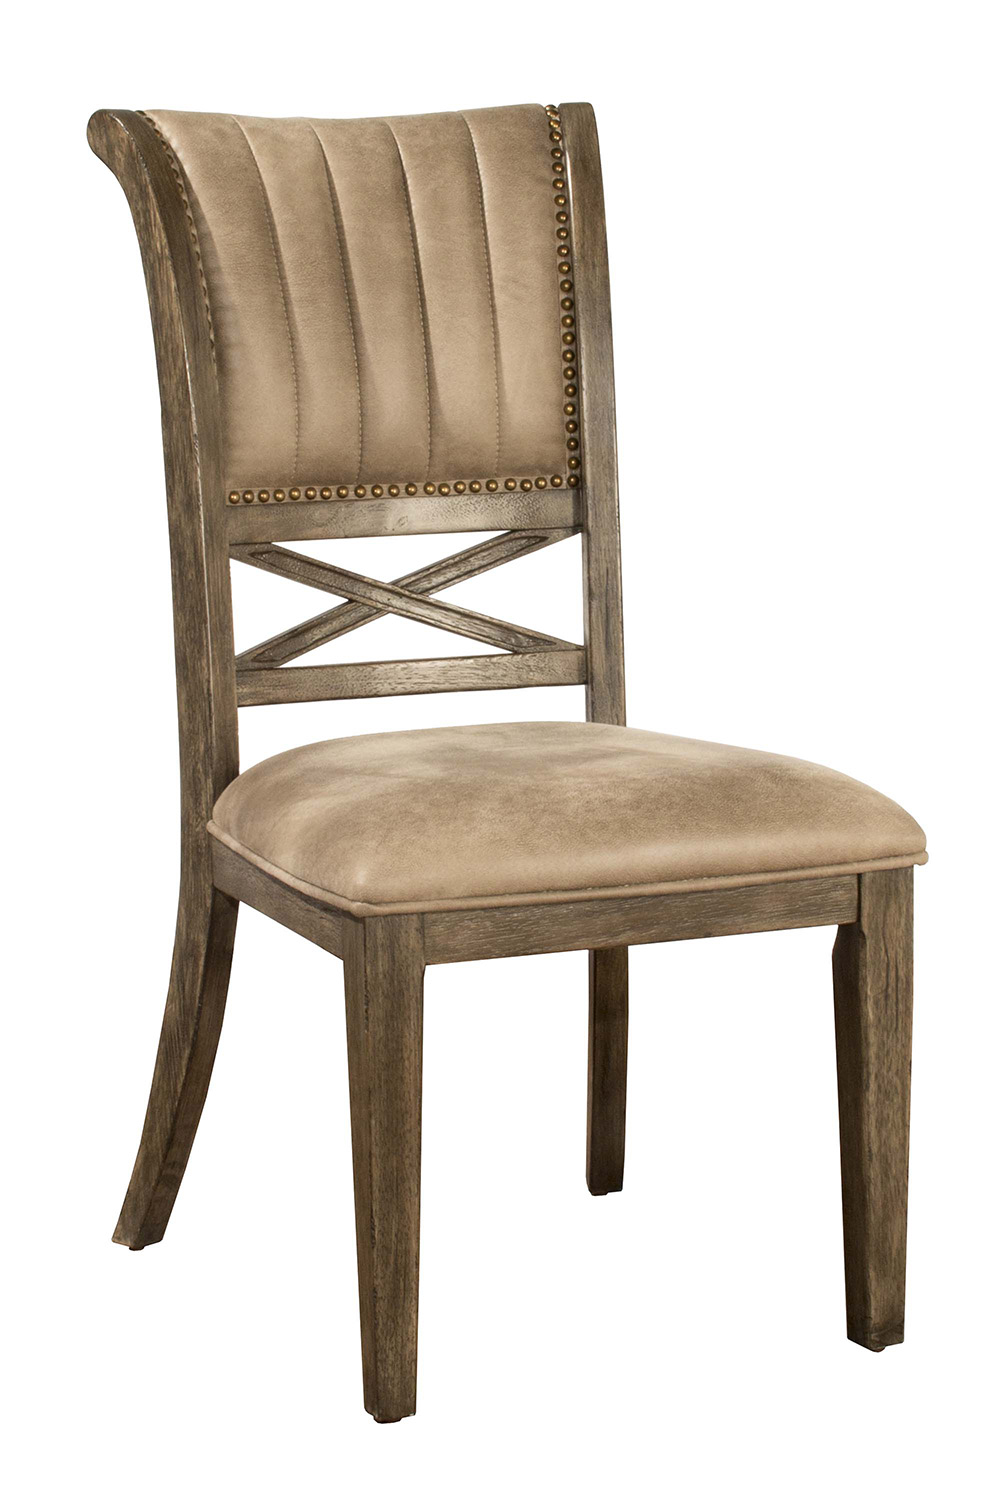 Hillsdale Legacy Dining Chair - Dark Grey